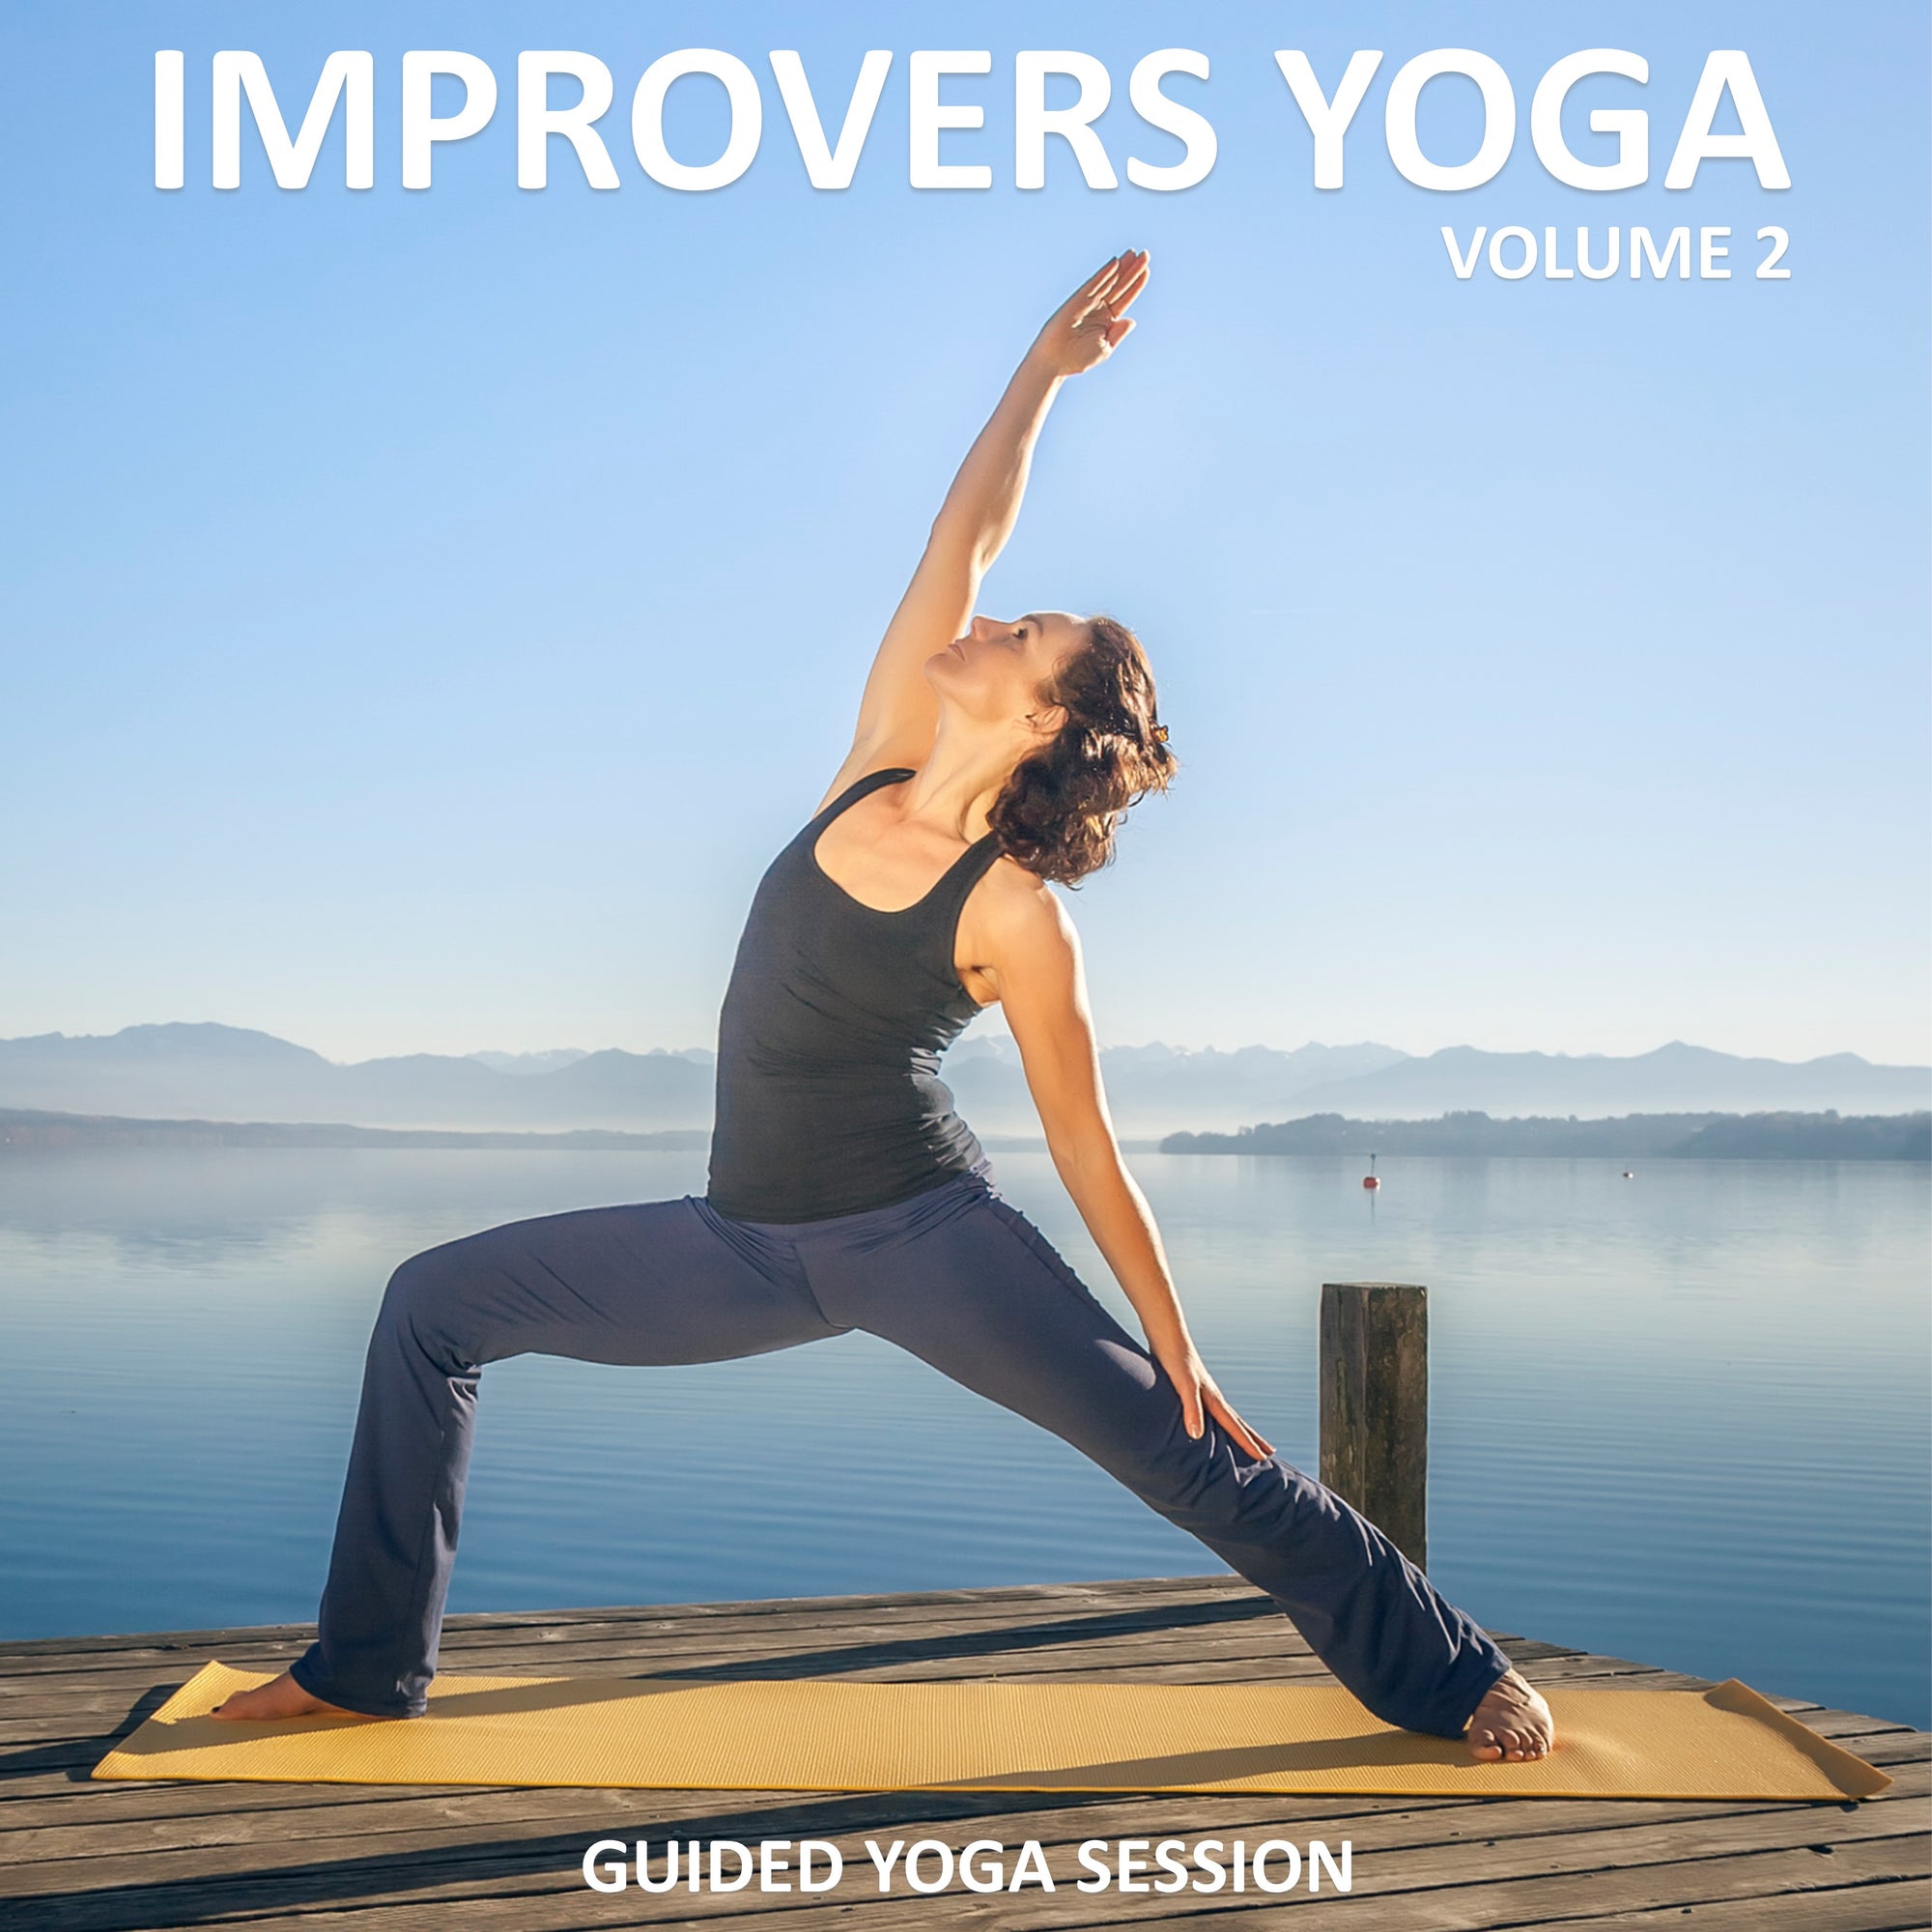 Improvers Yoga Volume 2